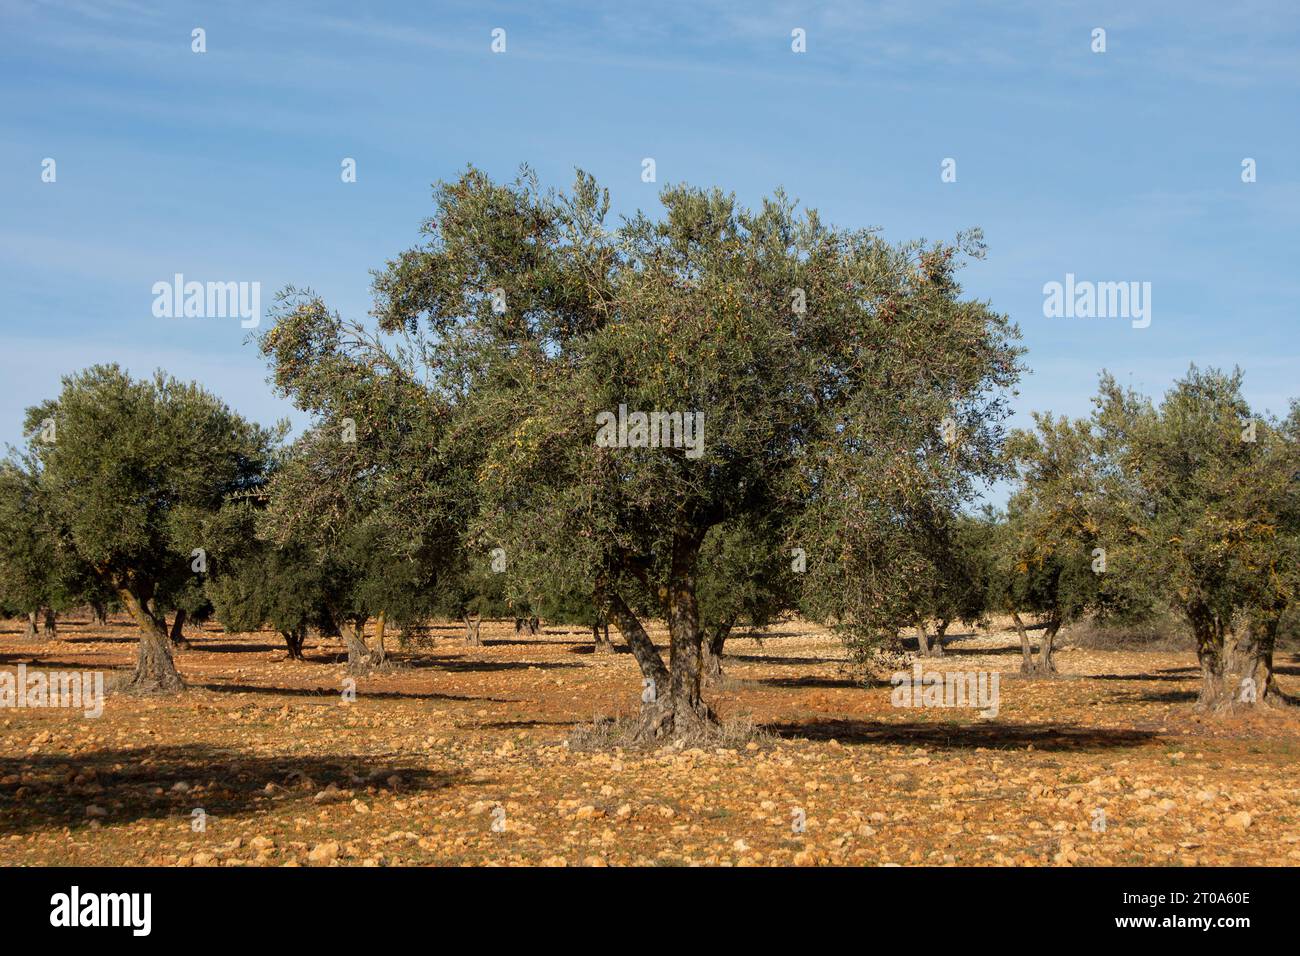 Olivar mediterráneo en España, olivos fuente de aceite de oliva Stock Photo